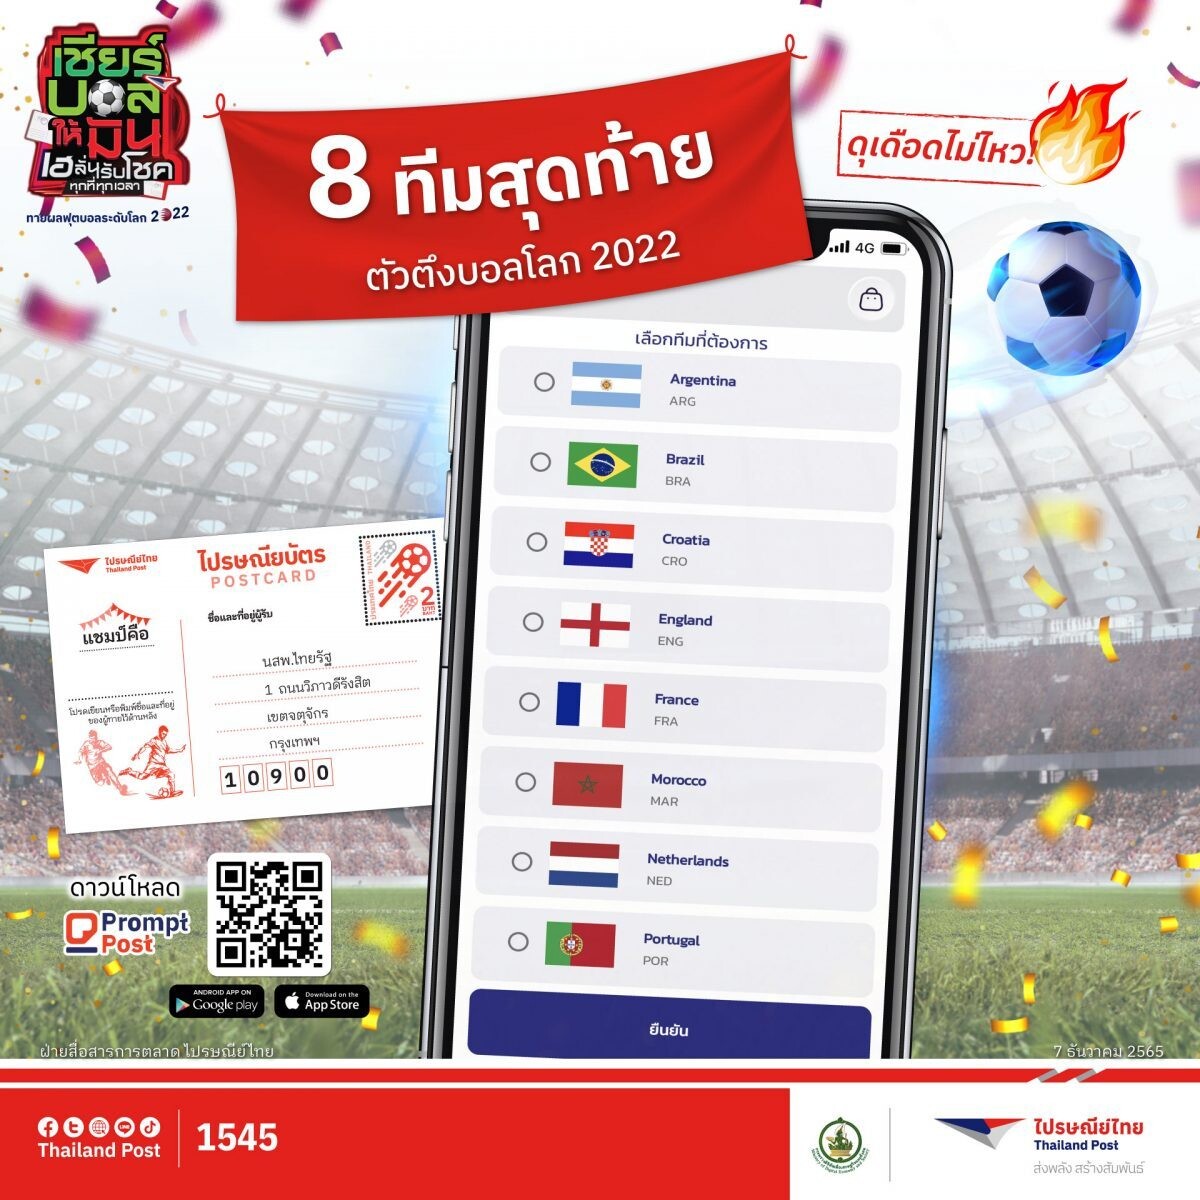 ตอกย้ำสีสันบอลโลก!! ไปรษณีย์ไทยชวนคนไทยเคาท์ดาวน์รอบ 8 ทีมสุดท้ายศึกเวิลด์คัพ 2022 ผ่านแอปฯ Prompt Post และไปรษณียบัตรถึง - 17 ธ.ค. 65 นี้